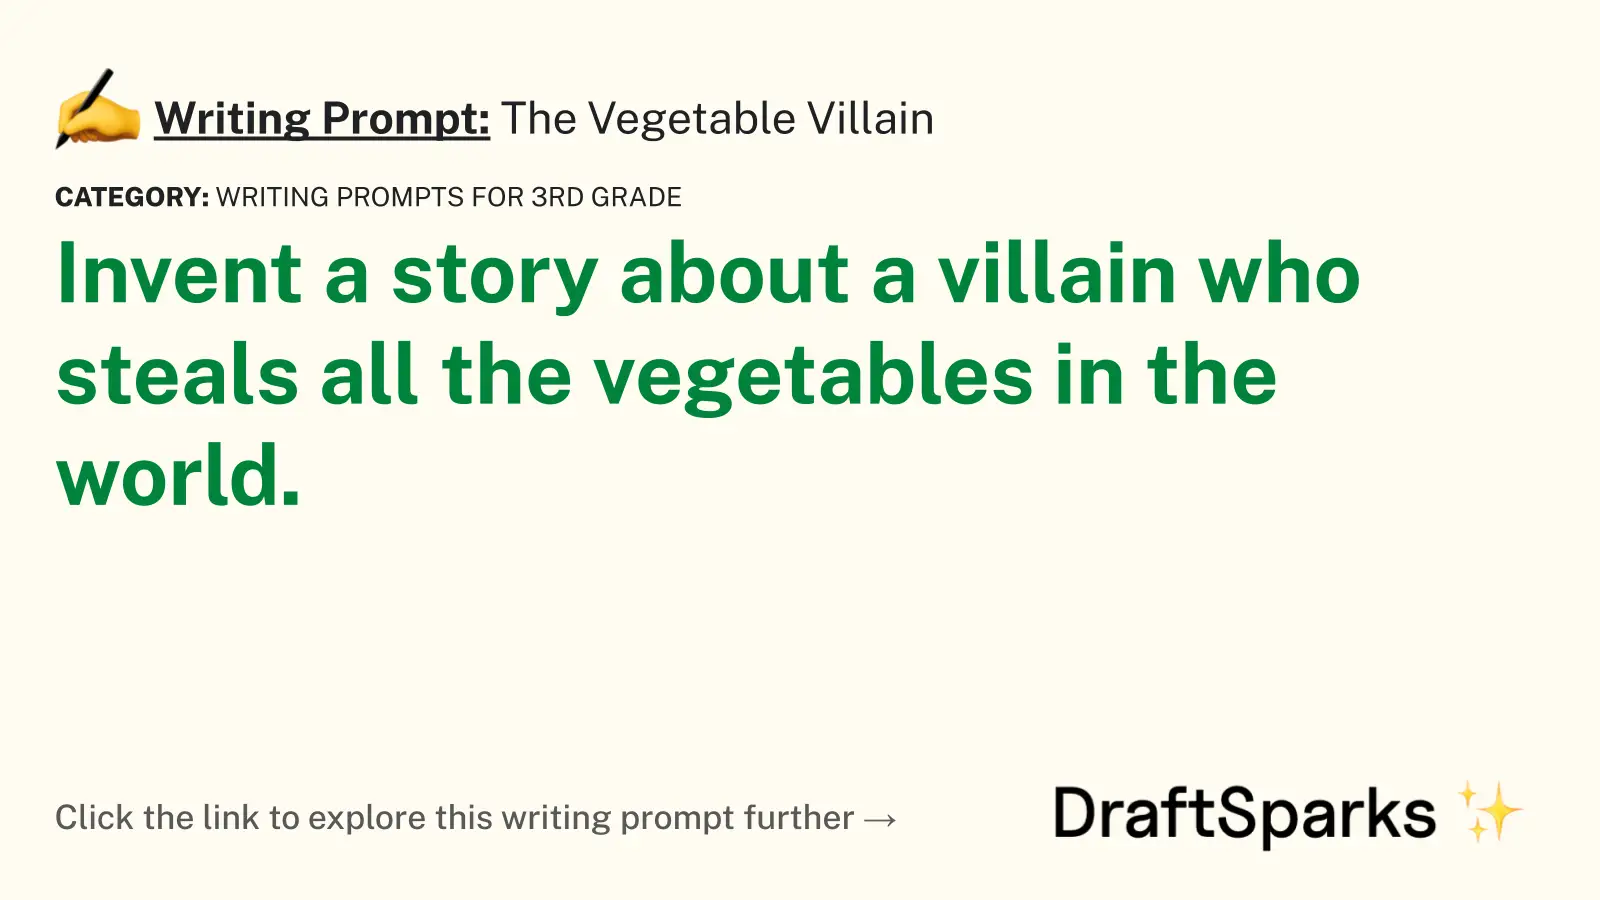 The Vegetable Villain